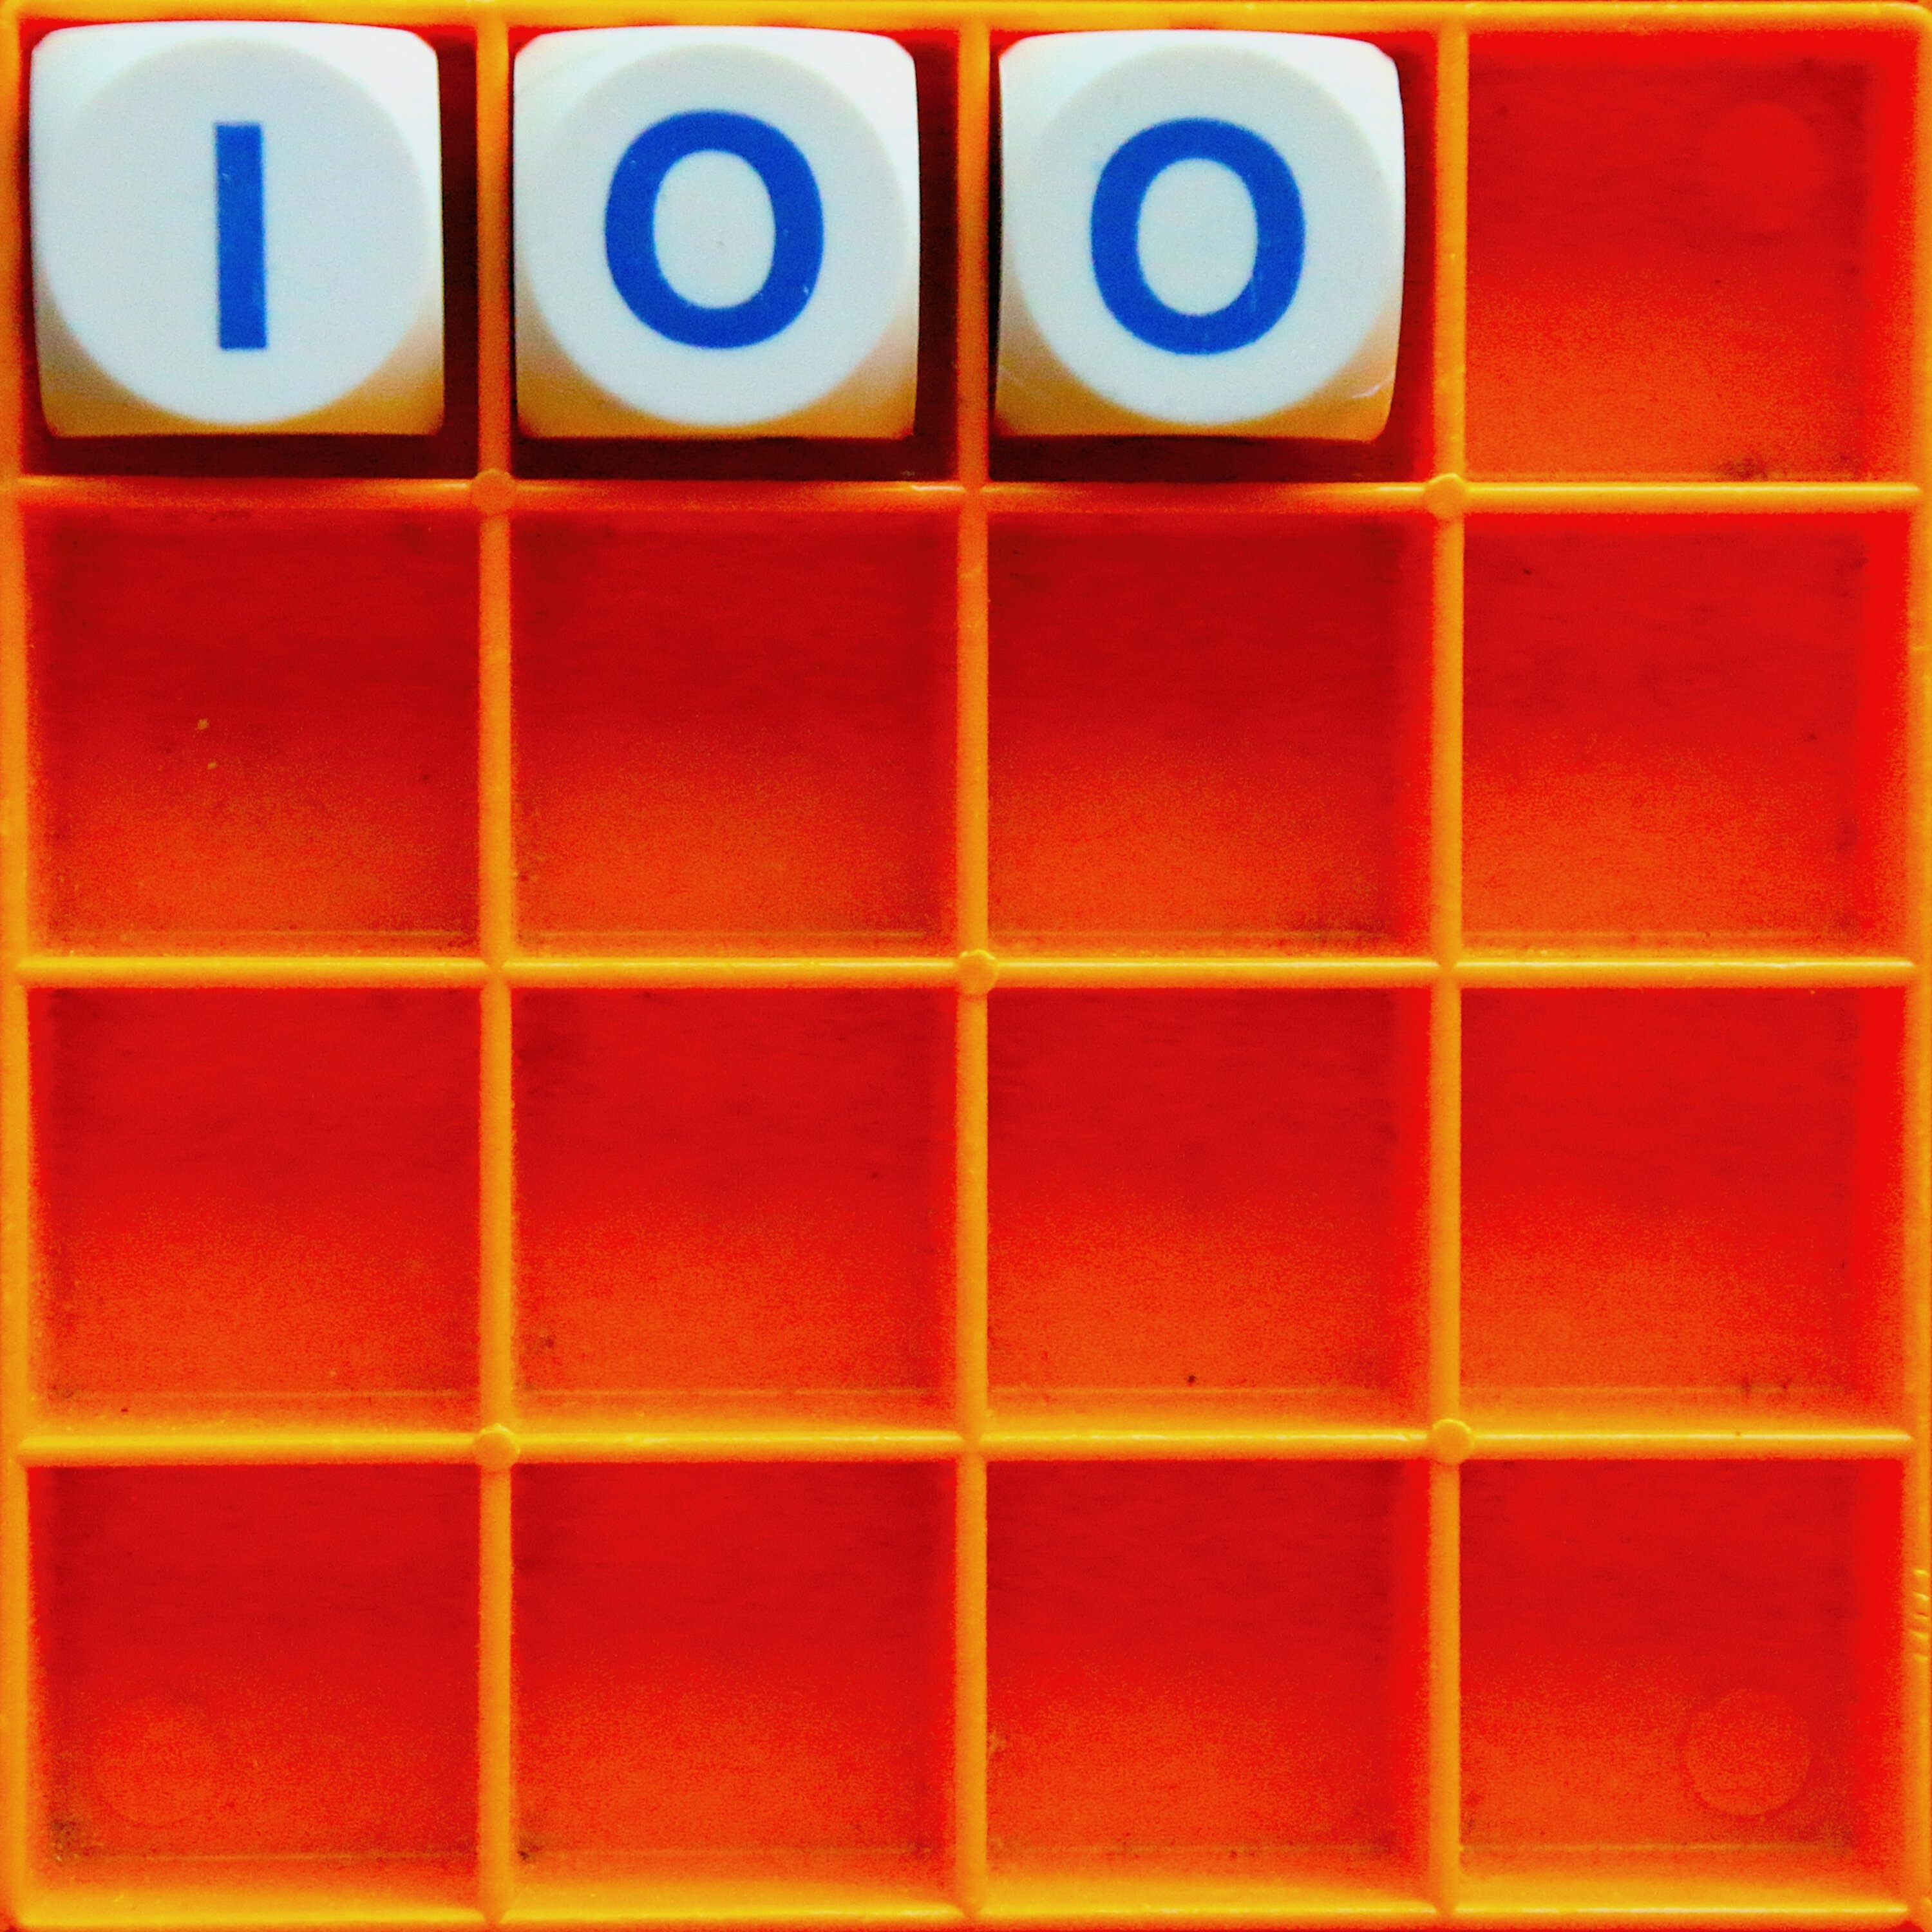 Thumbnail for "100. The Hundredth".